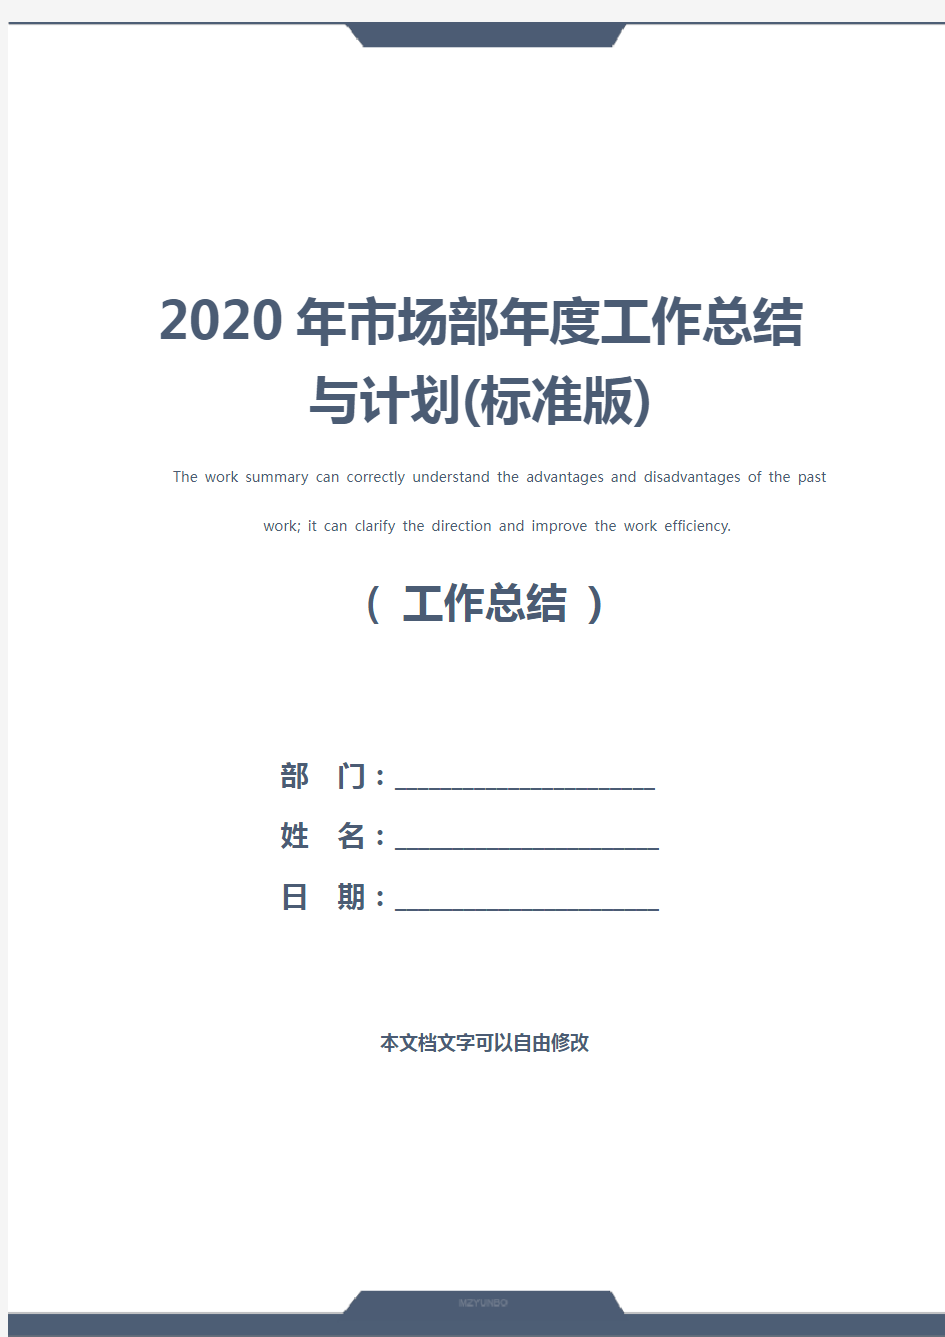 2020年市场部年度工作总结与计划(标准版)